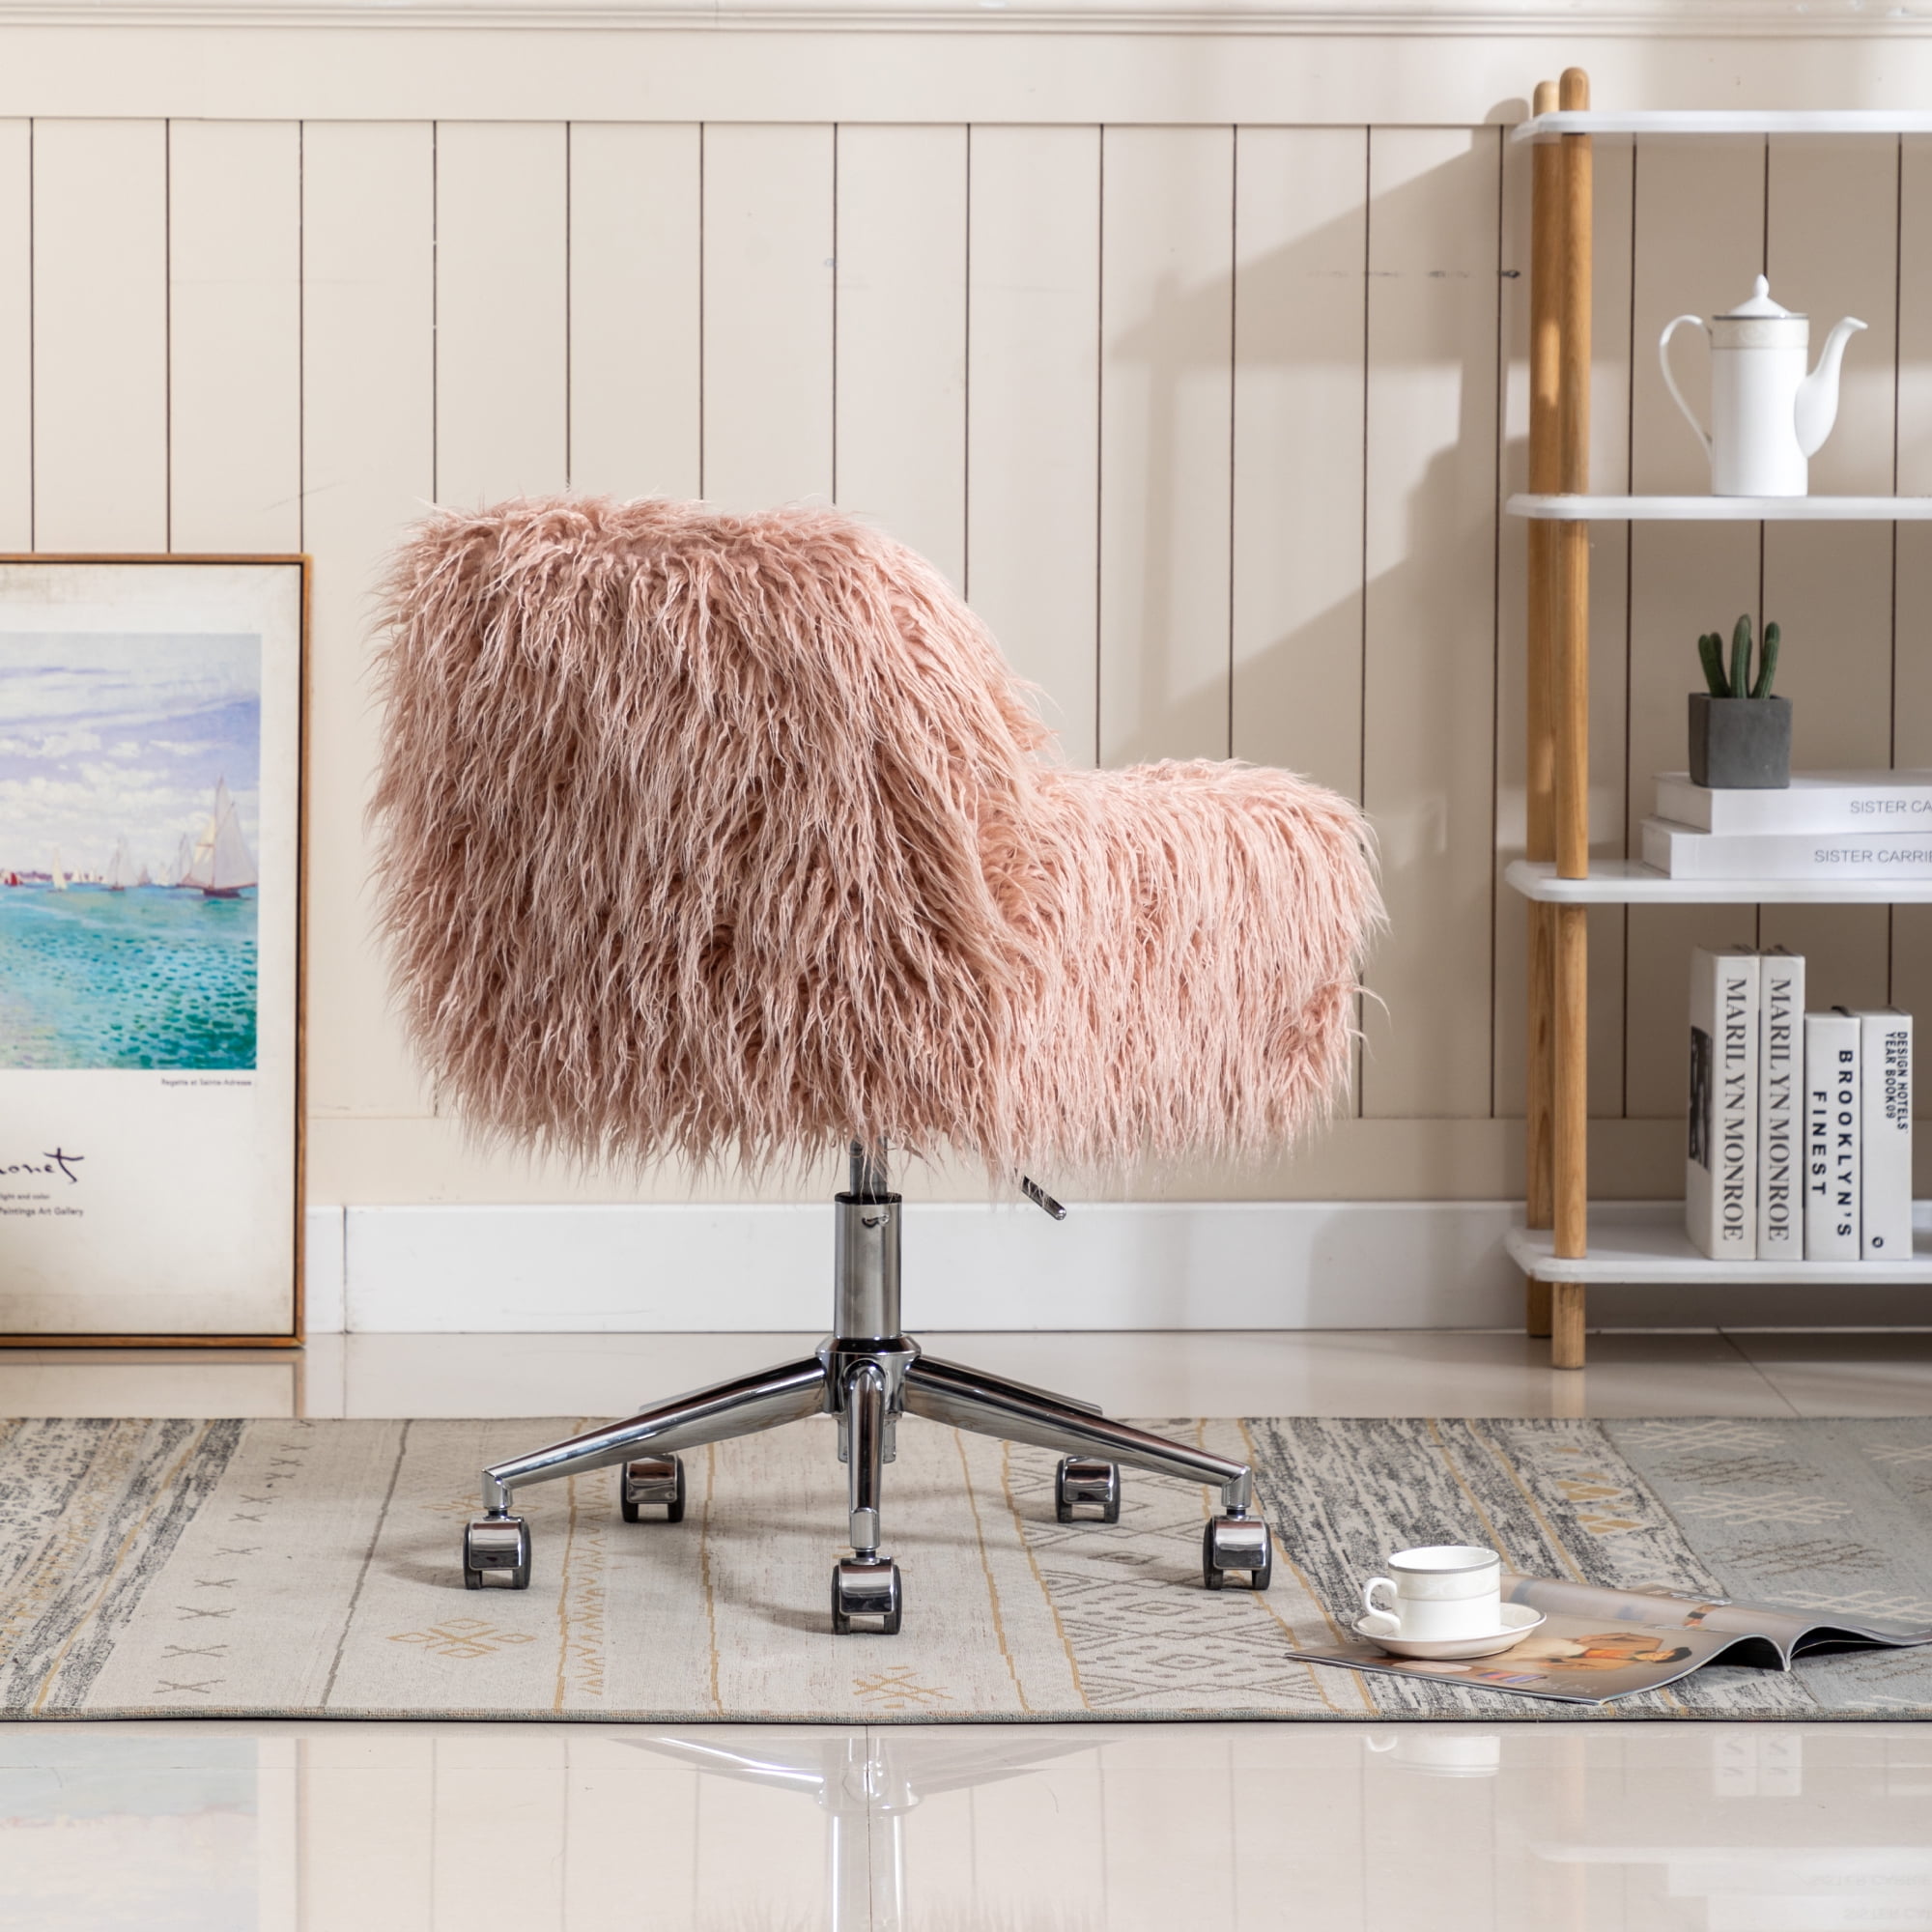 CAELUM Cute Pink Desk Chair for Teen Girl Kids, Home Office